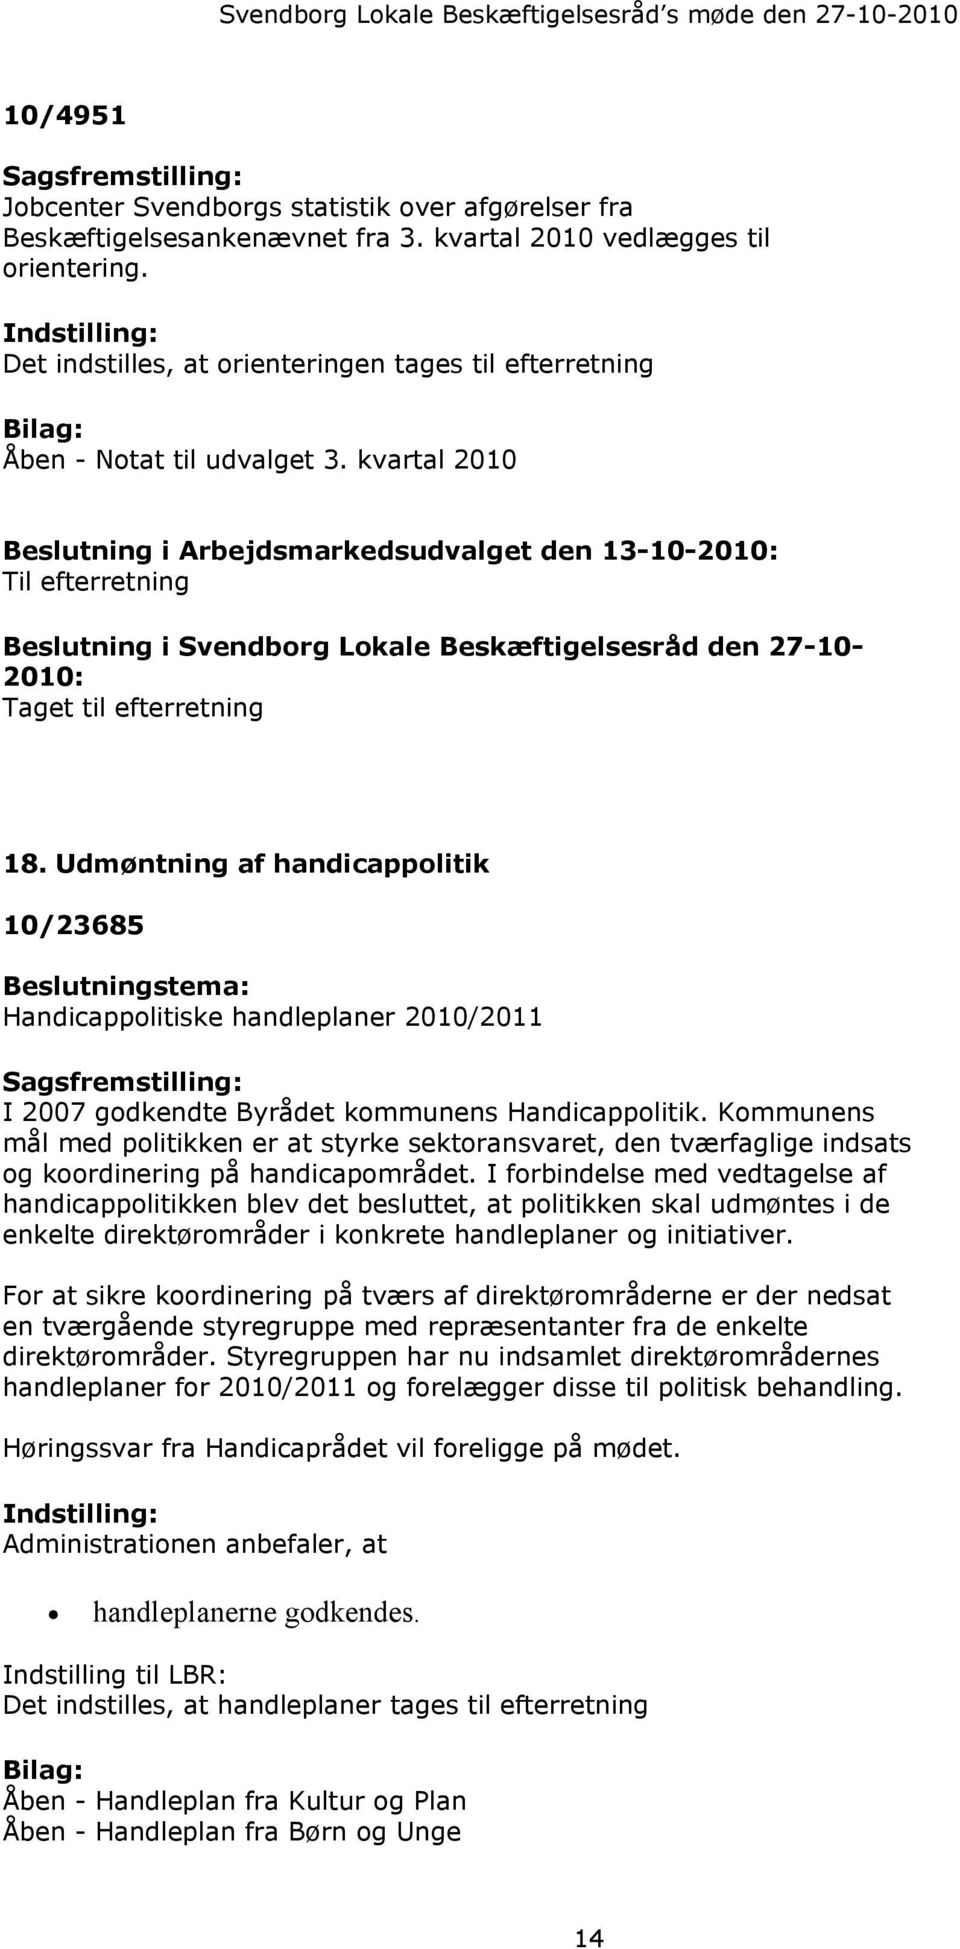 kvartal 2010 Beslutning i Arbejdsmarkedsudvalget den 13-10-2010: Til efterretning Beslutning i Svendborg Lokale Beskæftigelsesråd den 27-10- 2010: Taget til efterretning 18.